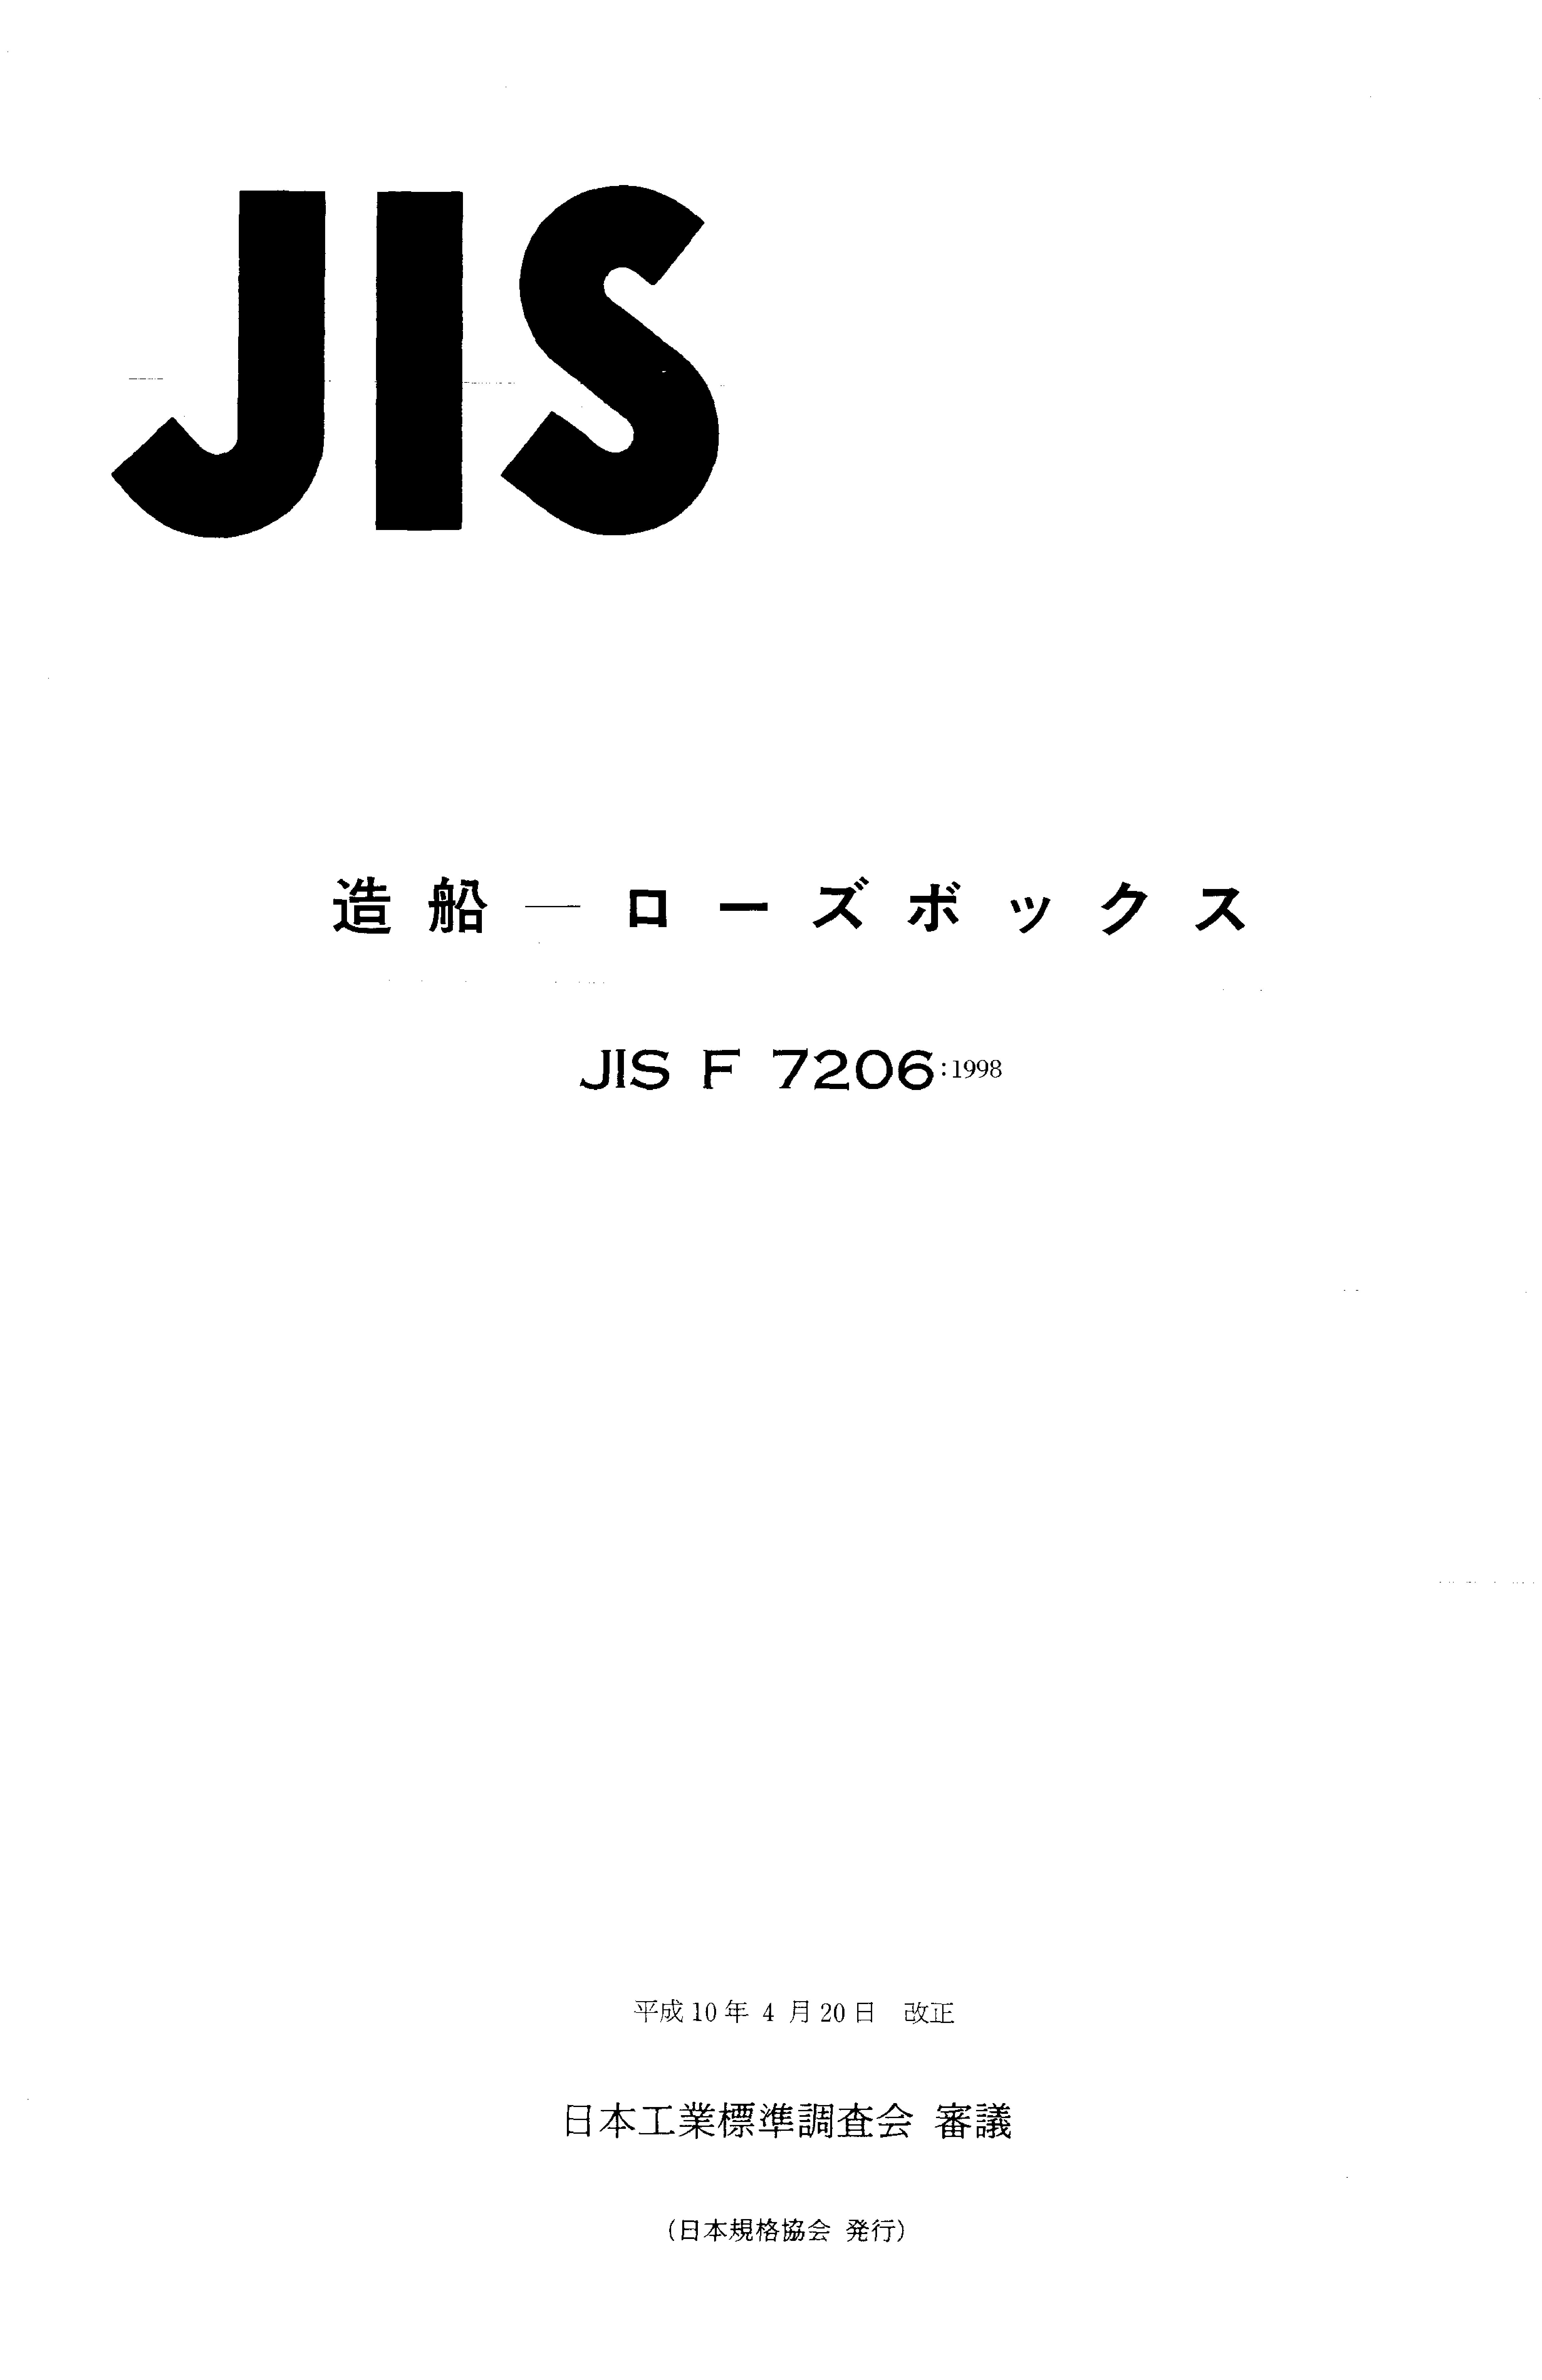 JIS F 7206:1998封面图